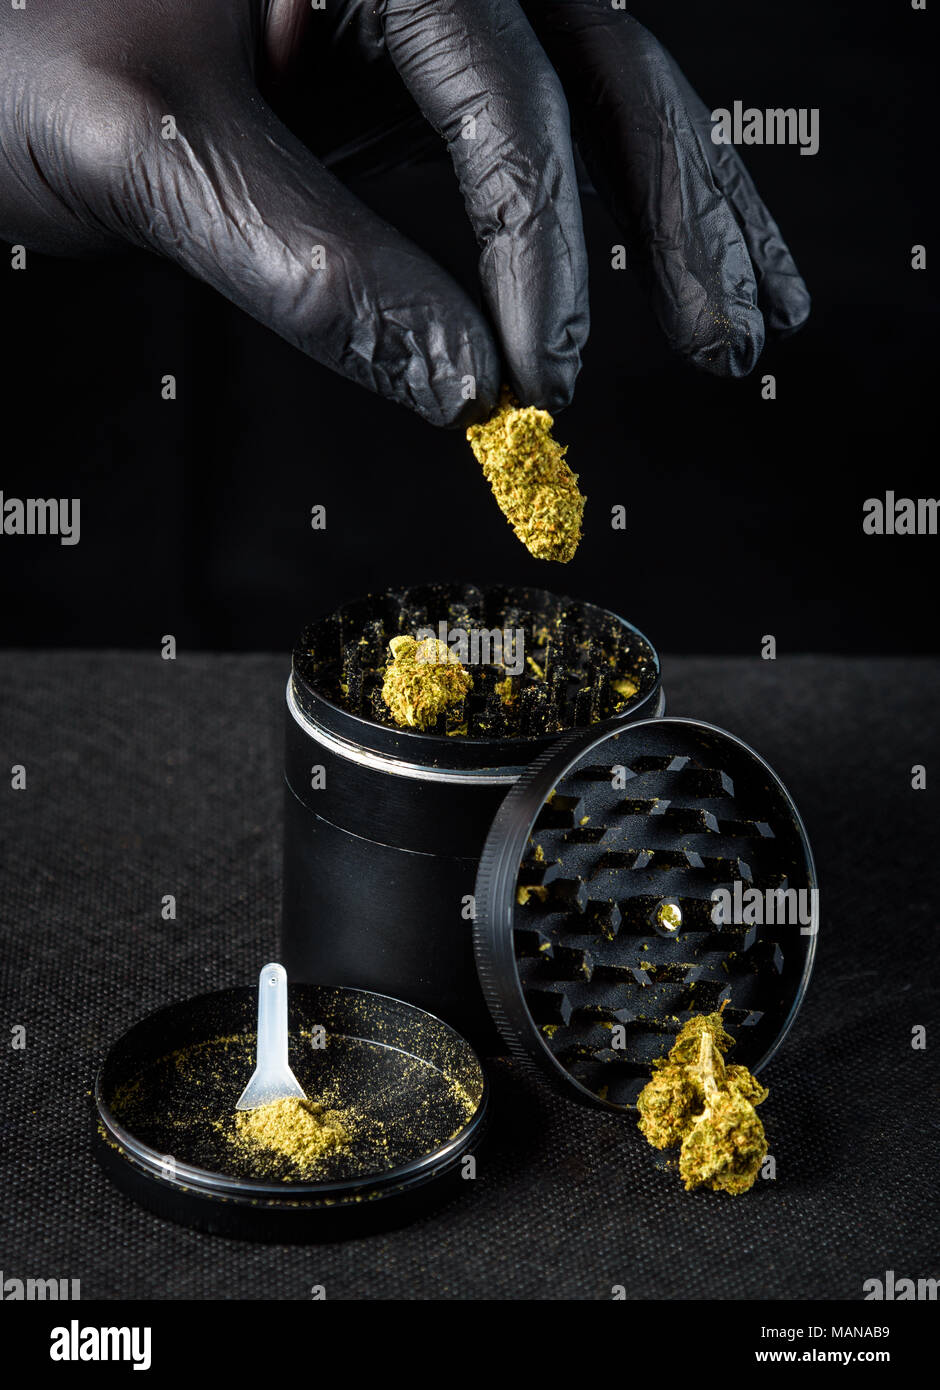 La marijuana médicinale grinder avec keef et racloir. une main avec un gant en latex noir tenant une nouvelle nug. Fond noir Banque D'Images